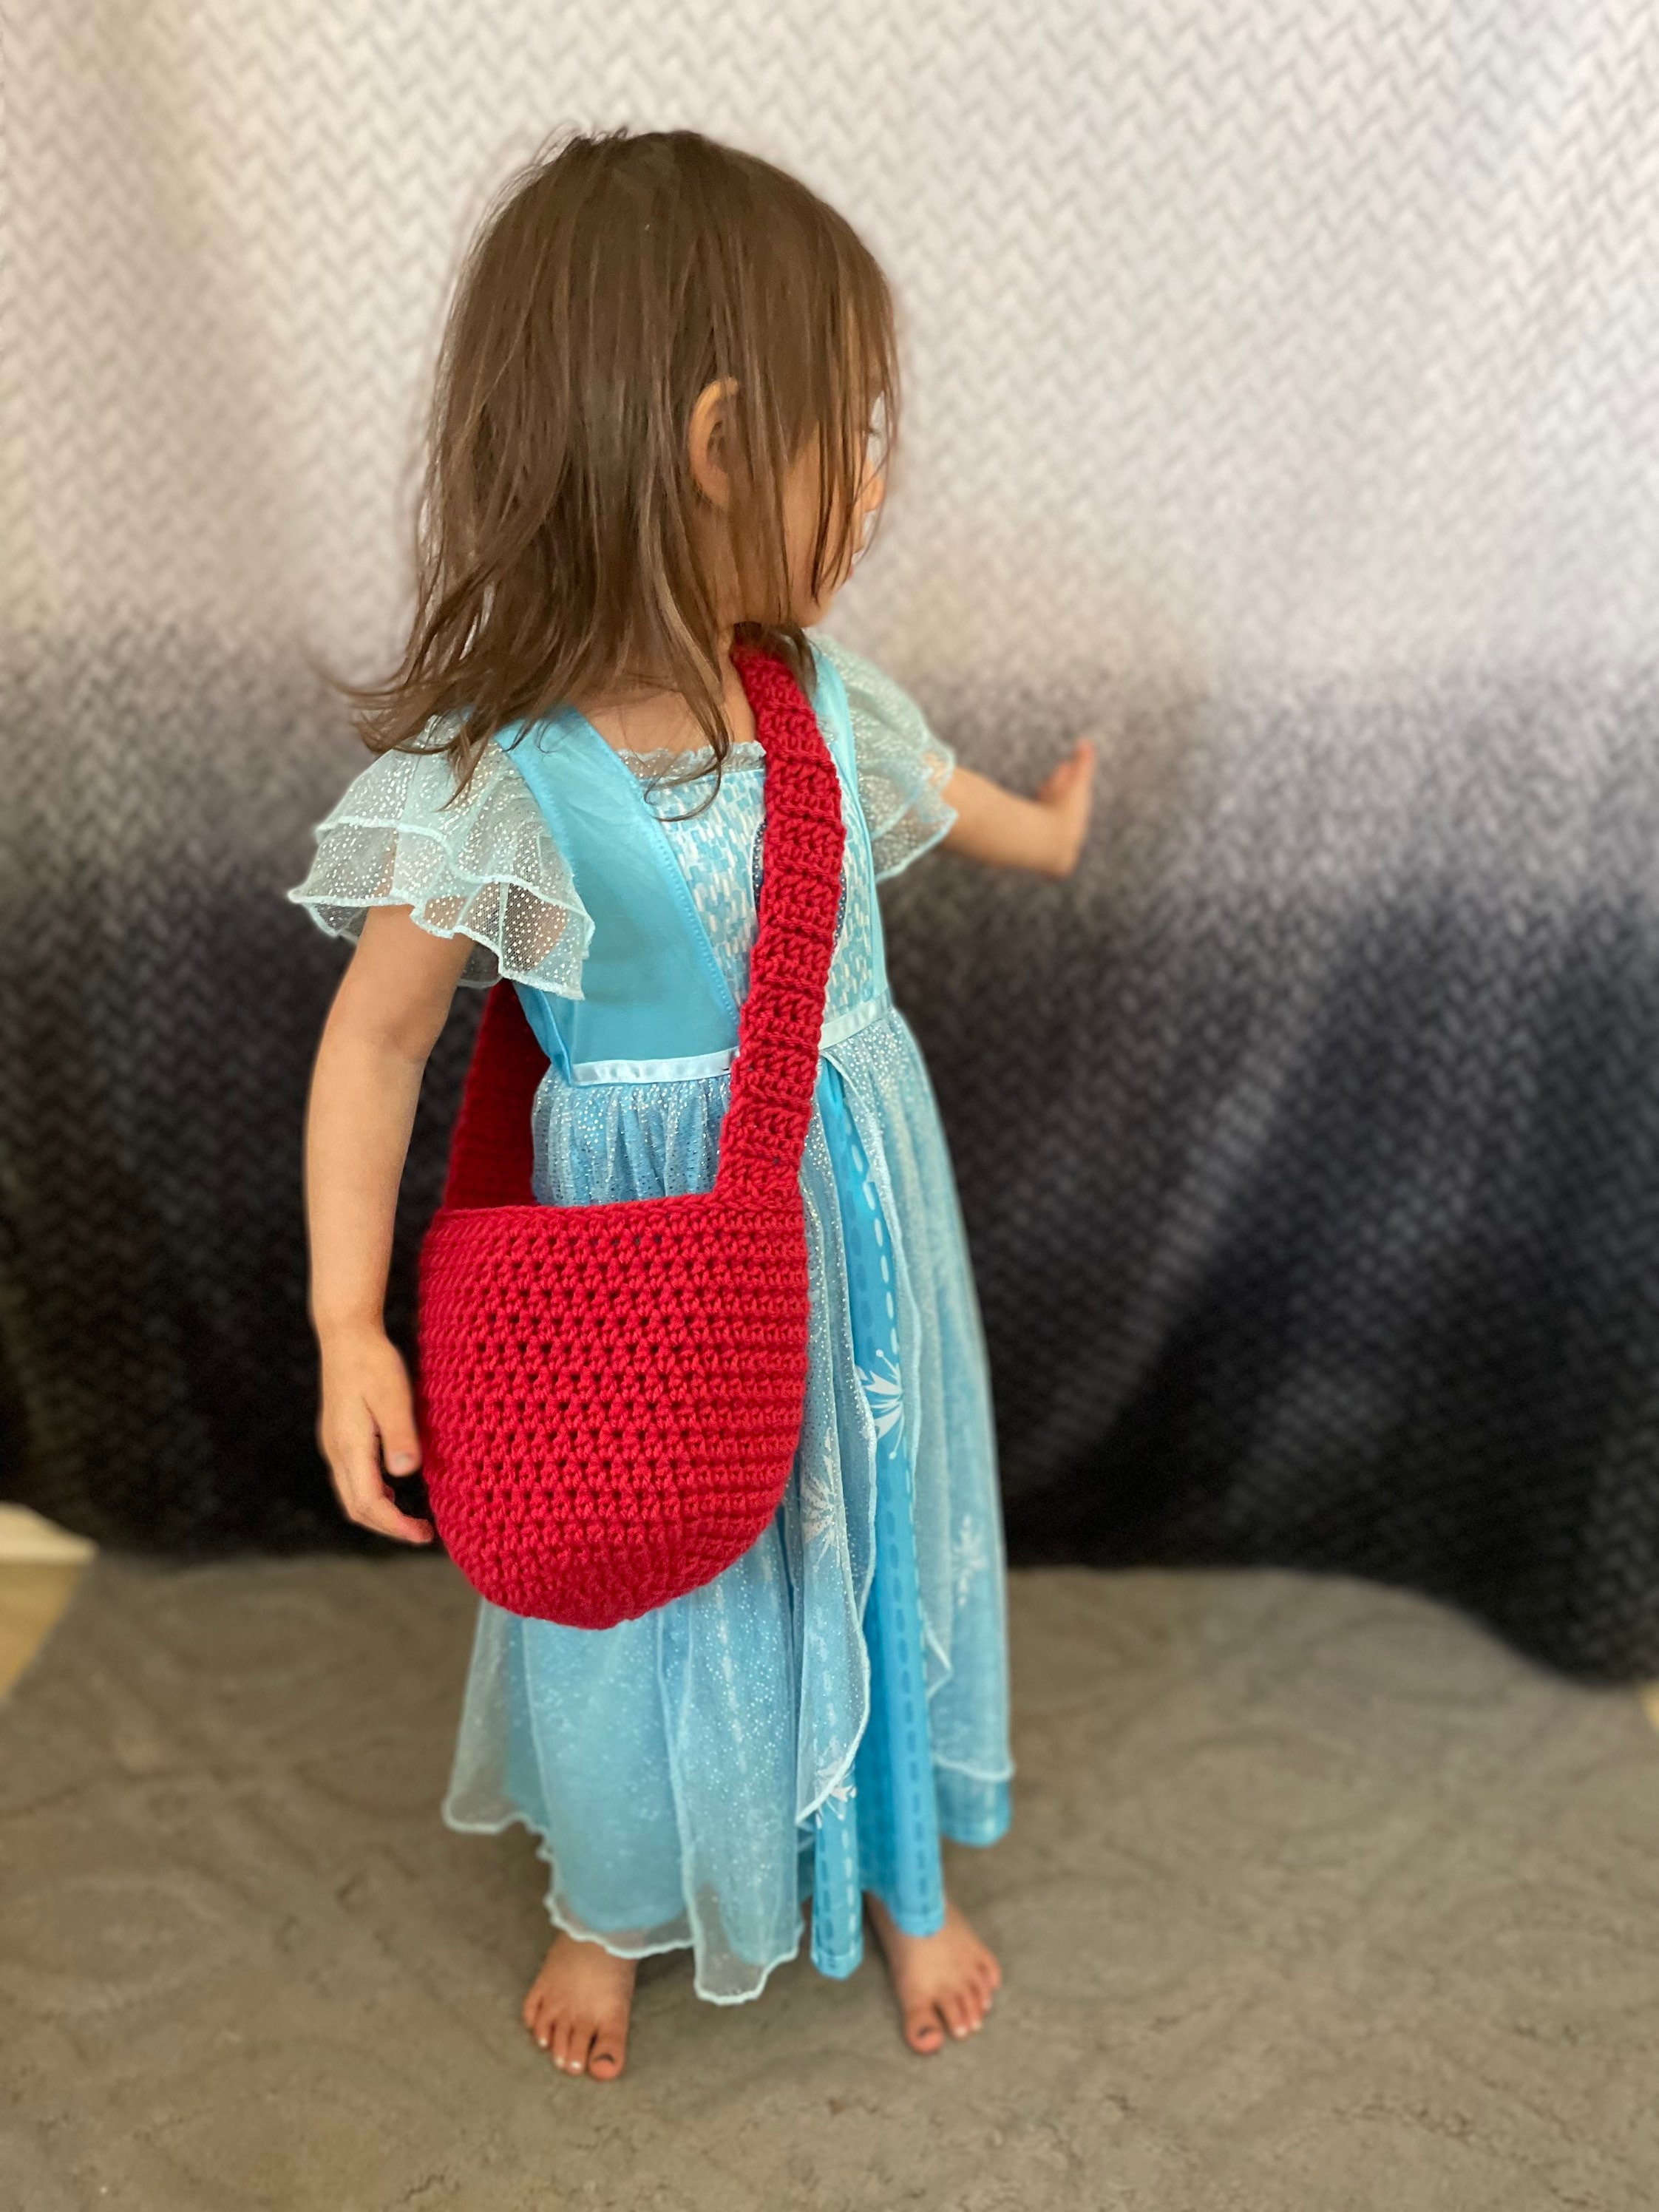 BUTKUS Retro Pattern Little Girls Purse Toddler Kids Crossbody Bags for  Girls Birthday Gift